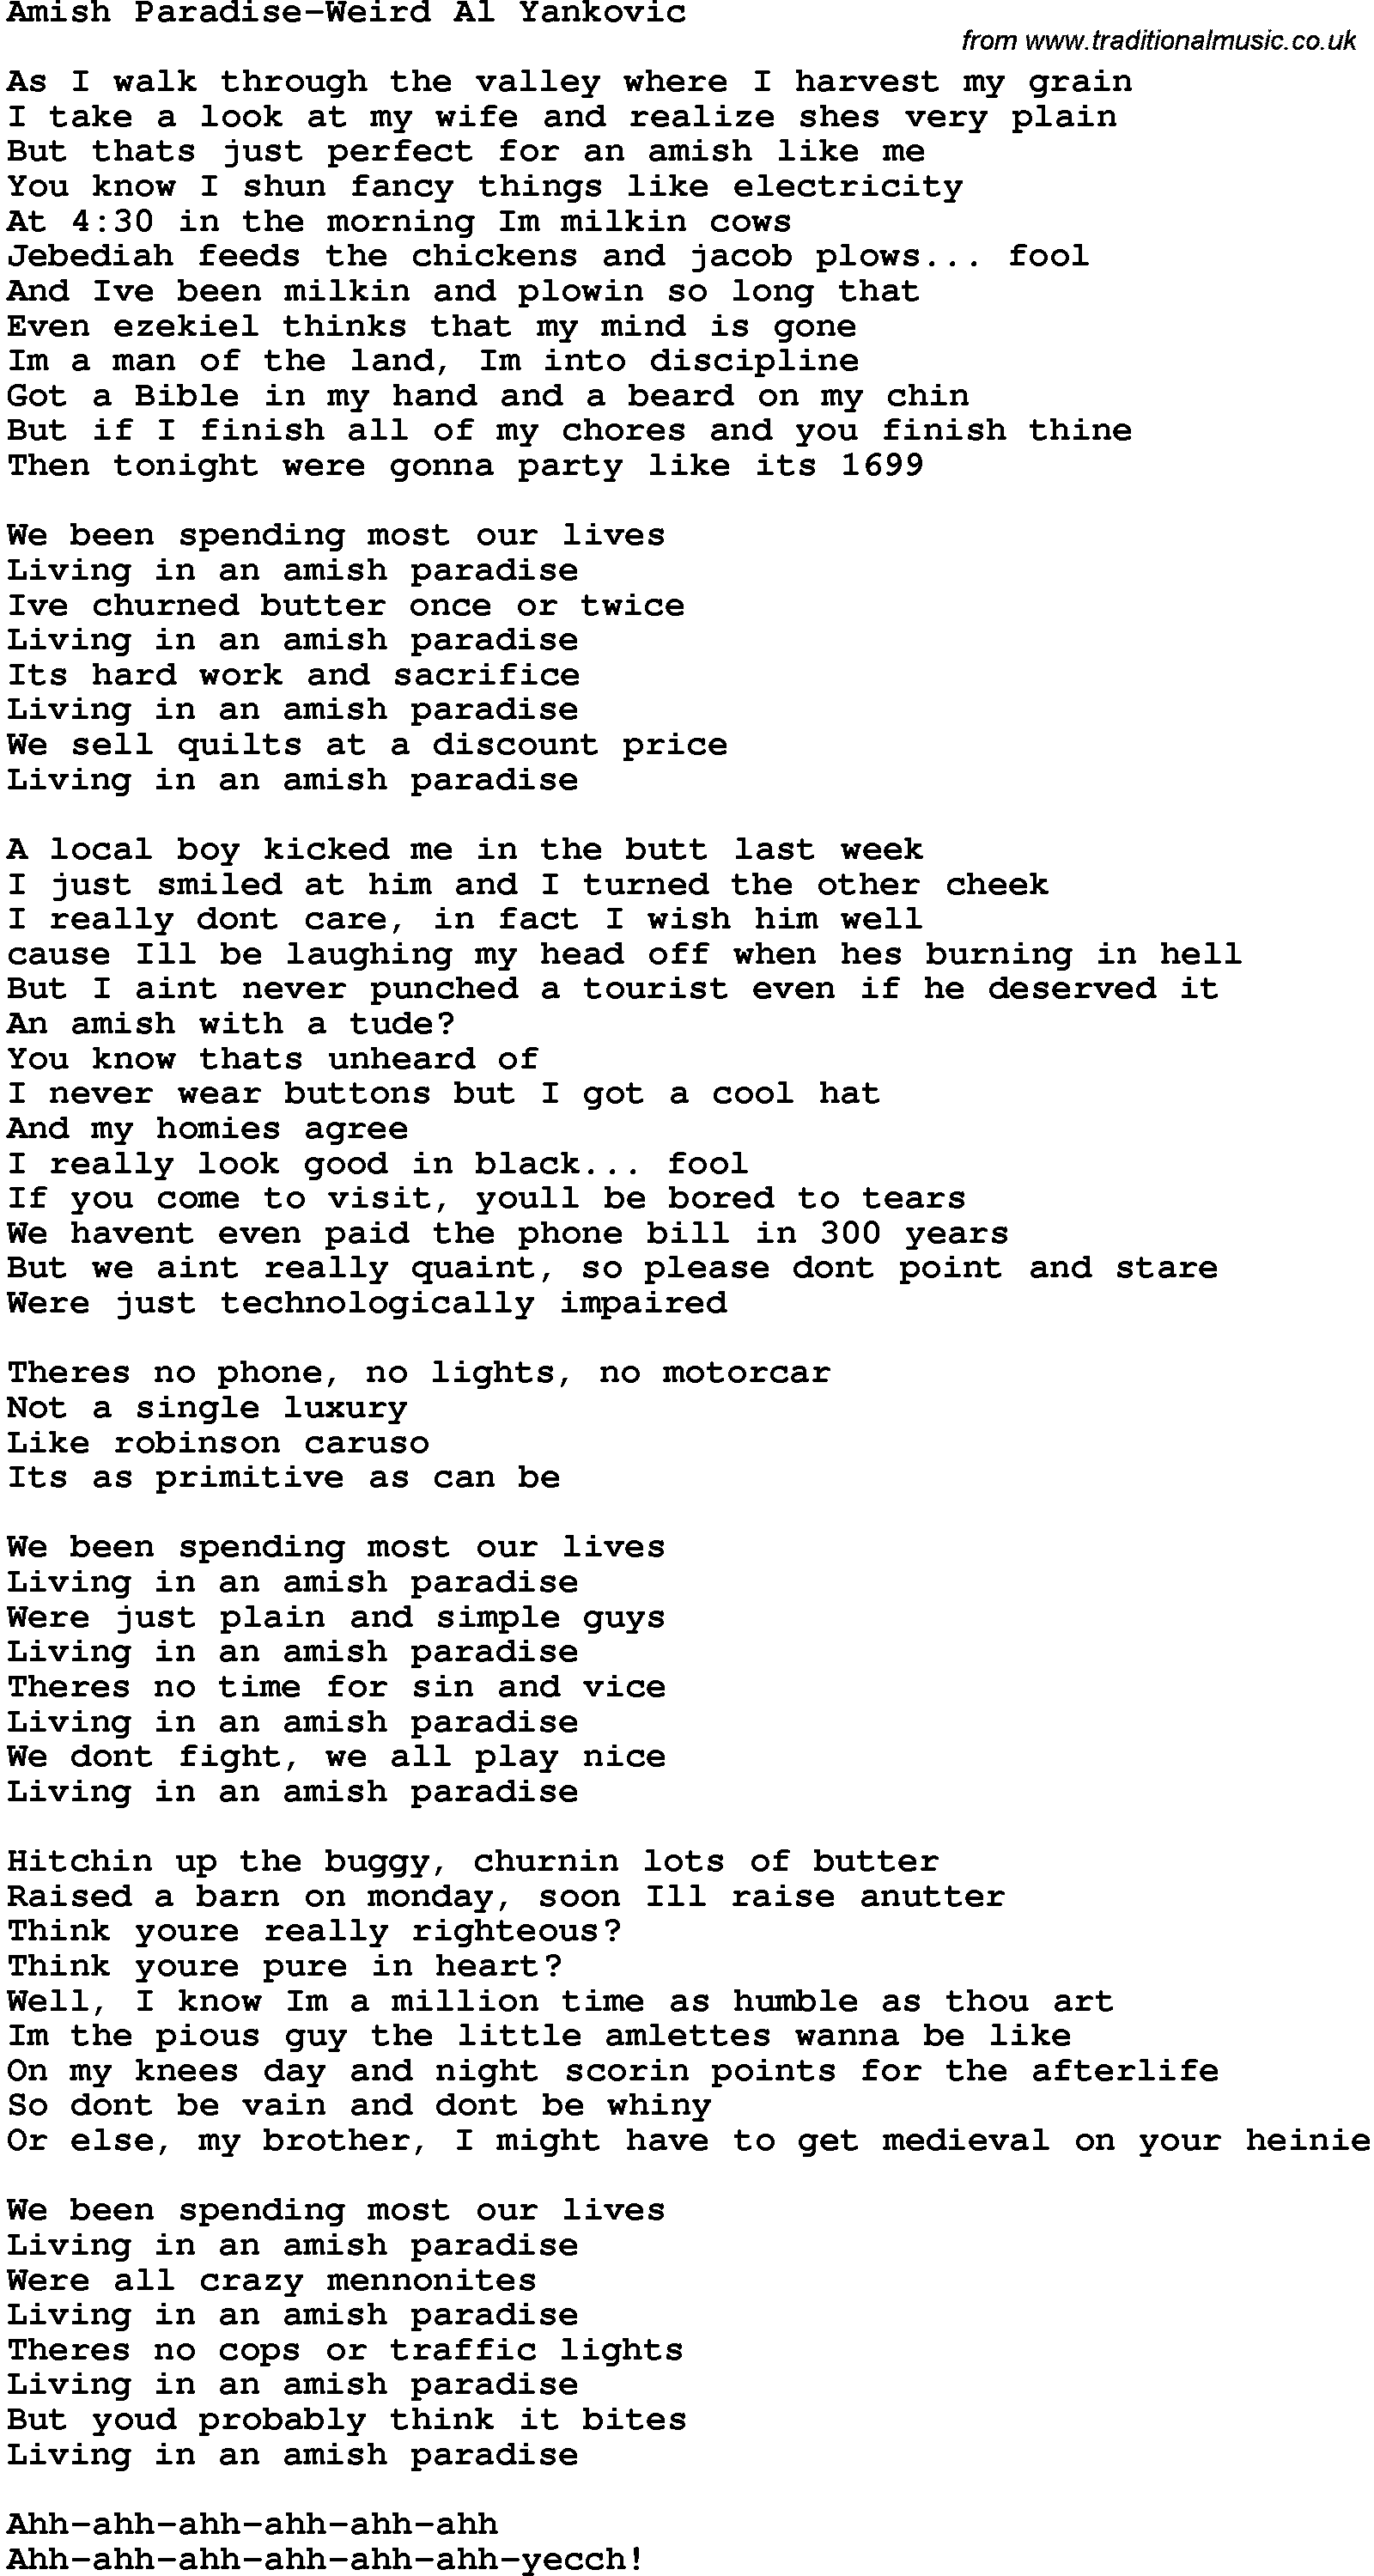 Novelty song: Amish Paradise-Weird Al Yankovic lyrics